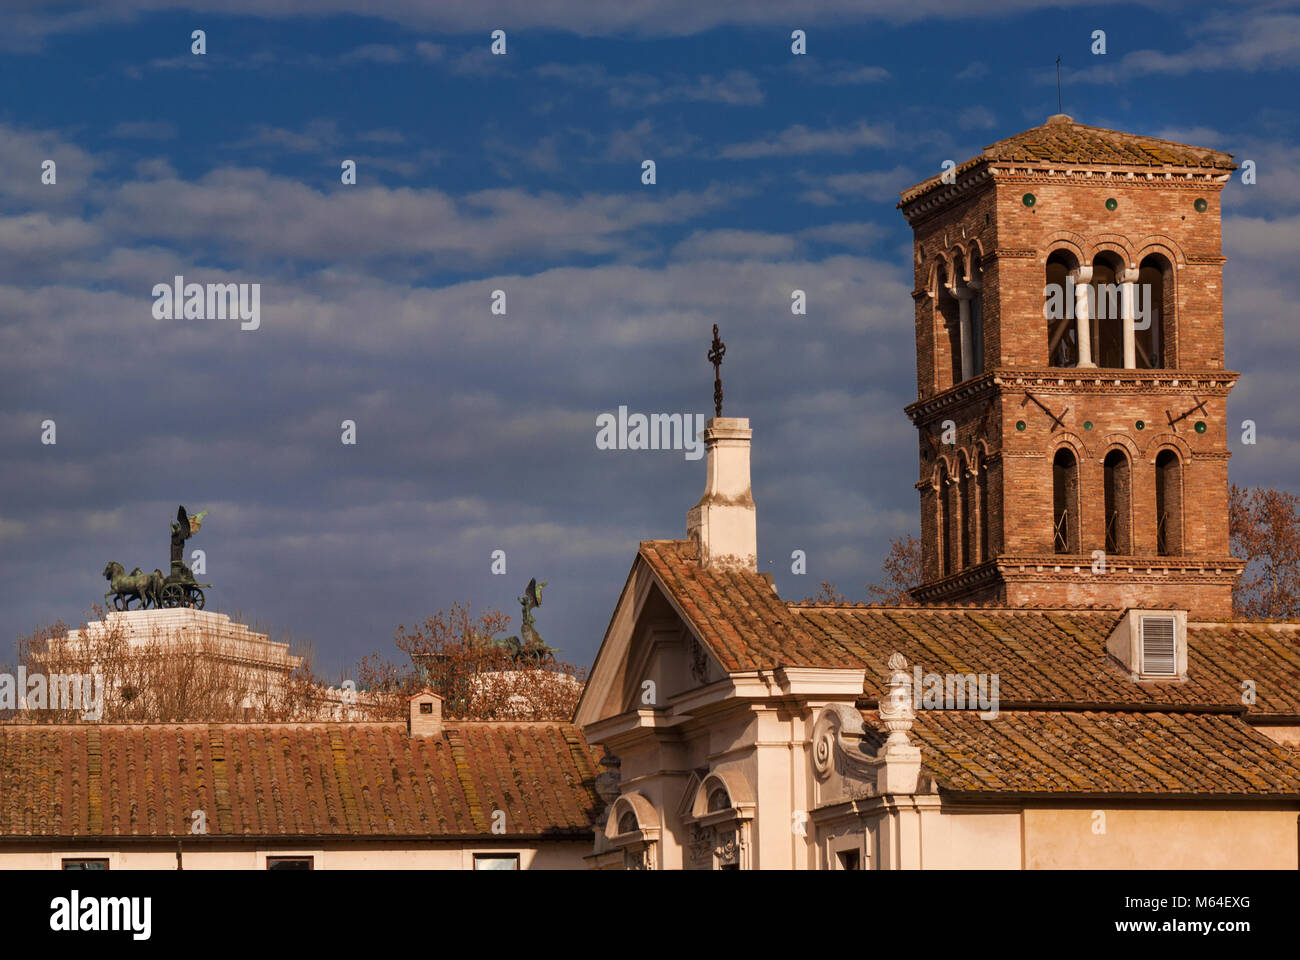 Vista invernale di San Bartolomeo all Isola il campanile medievale con il Vittoriano Moument in background con le nuvole, nel centro storico di Roma Foto Stock